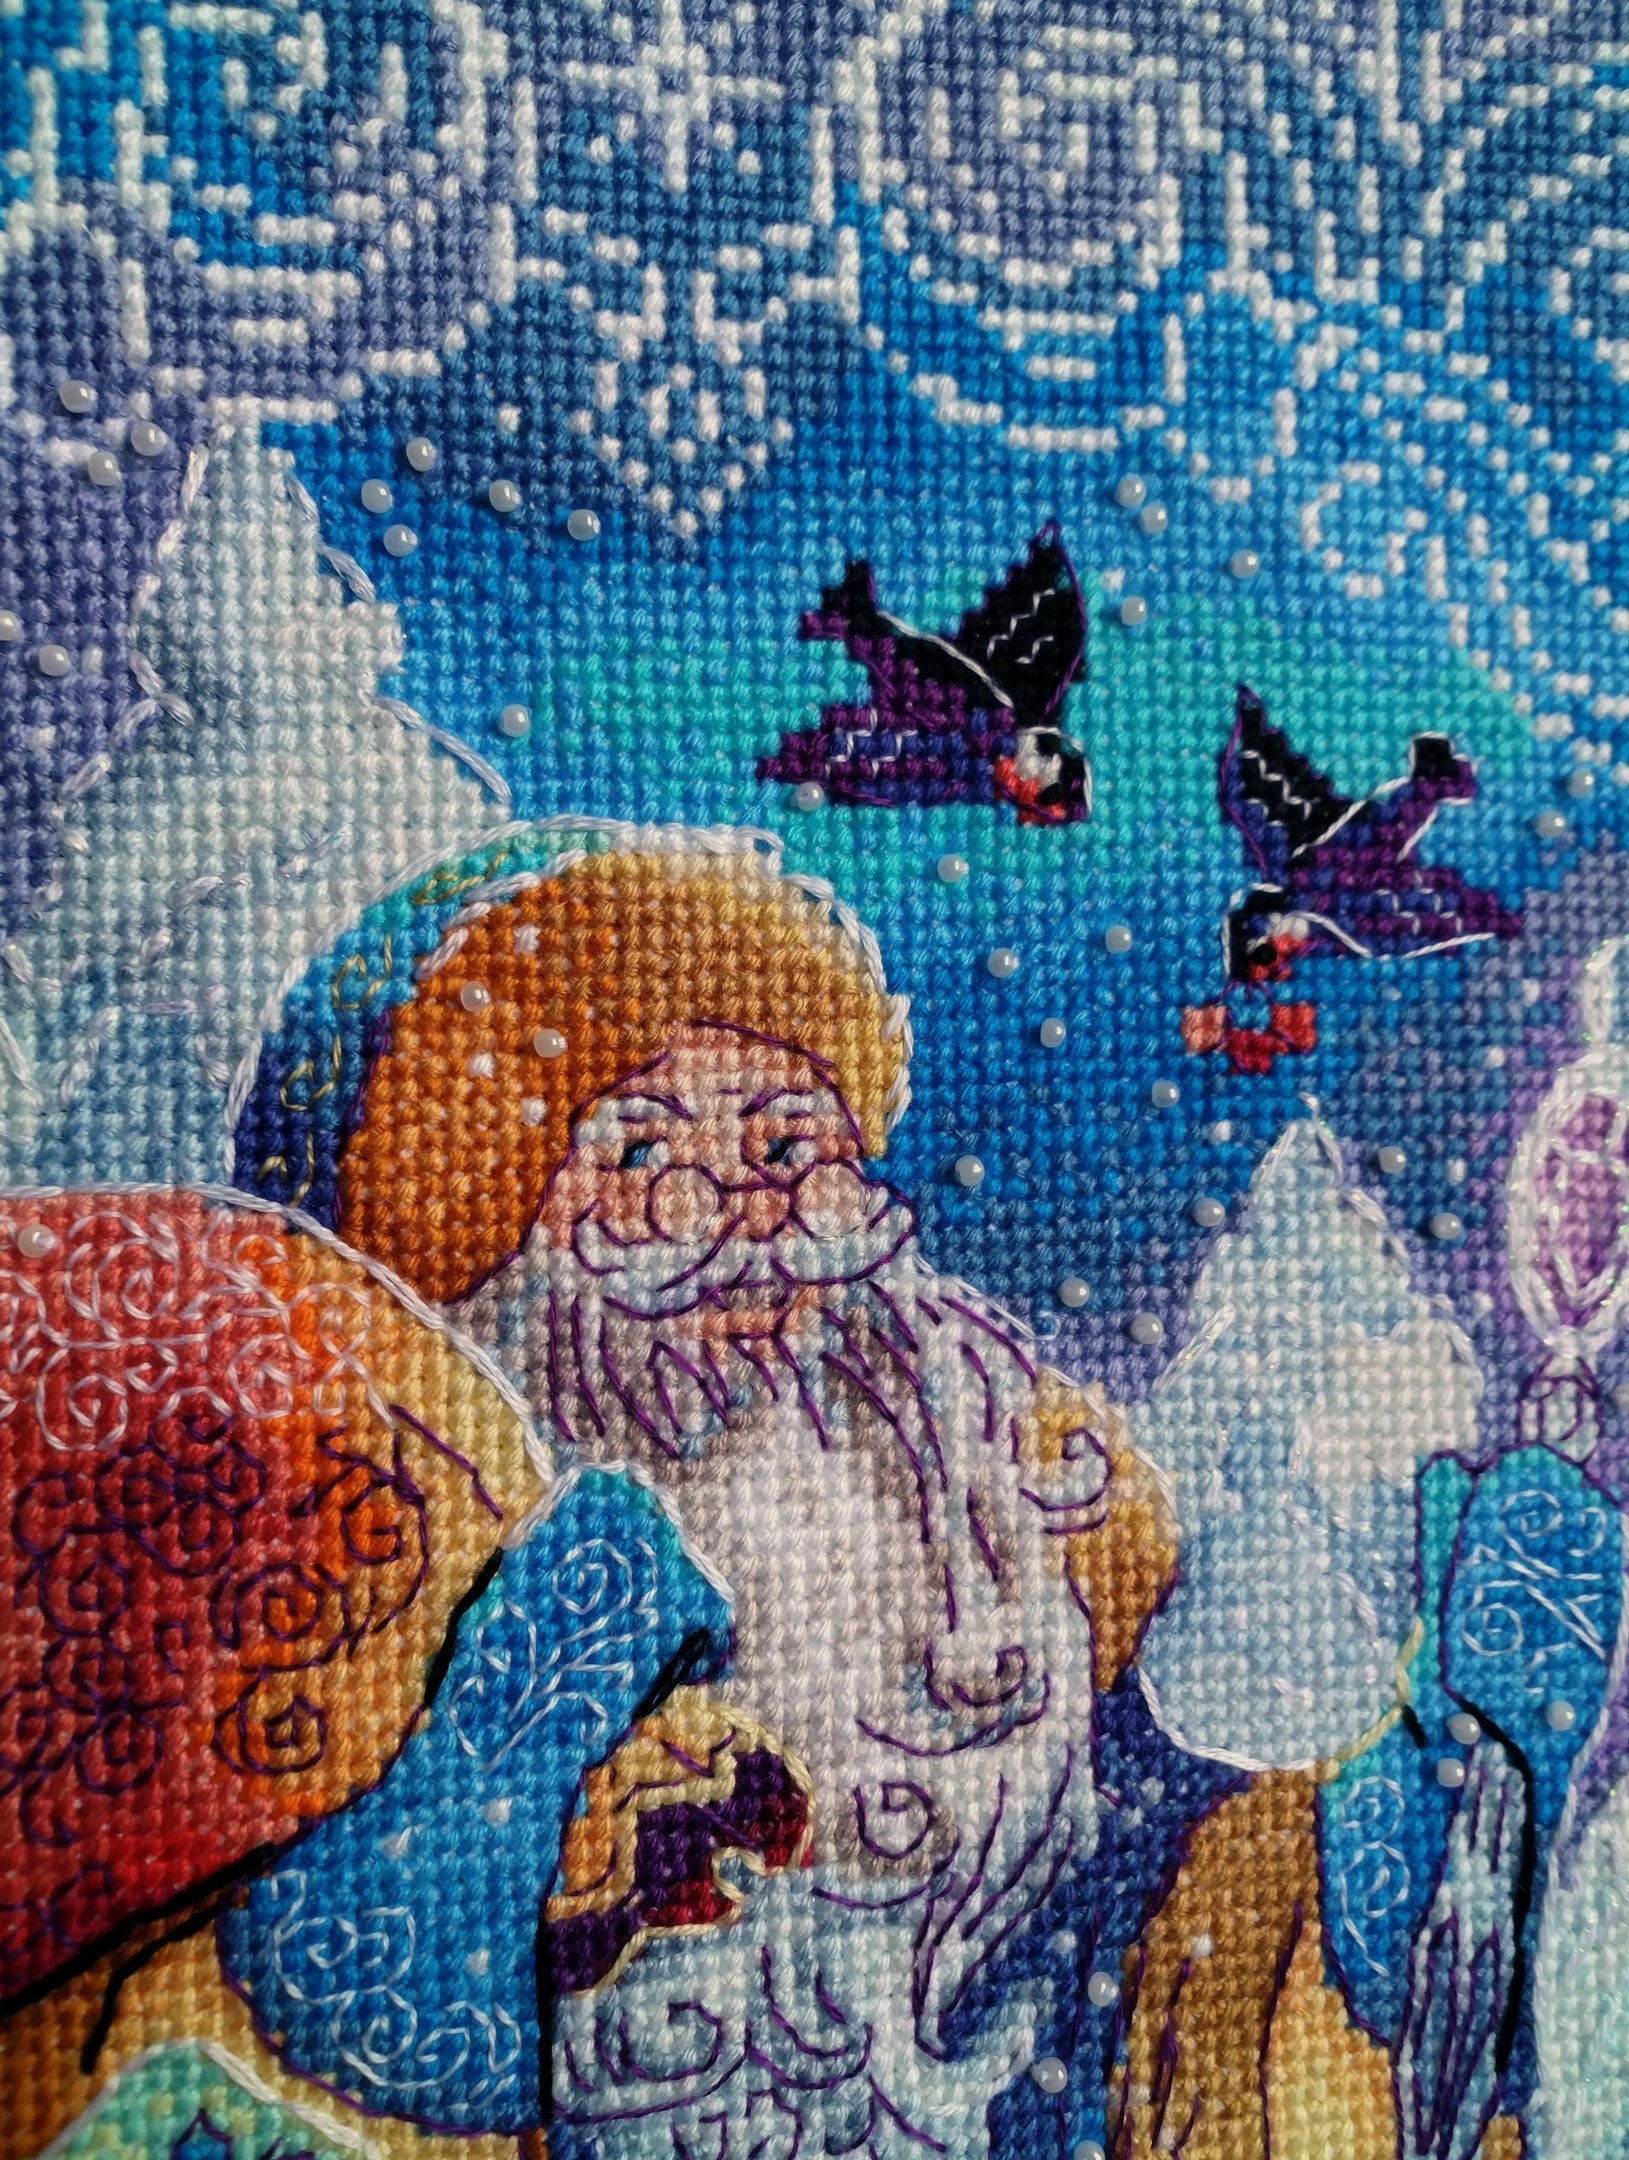 Christmas Stitch Tapestry for Sale by FunkeyMonkey9